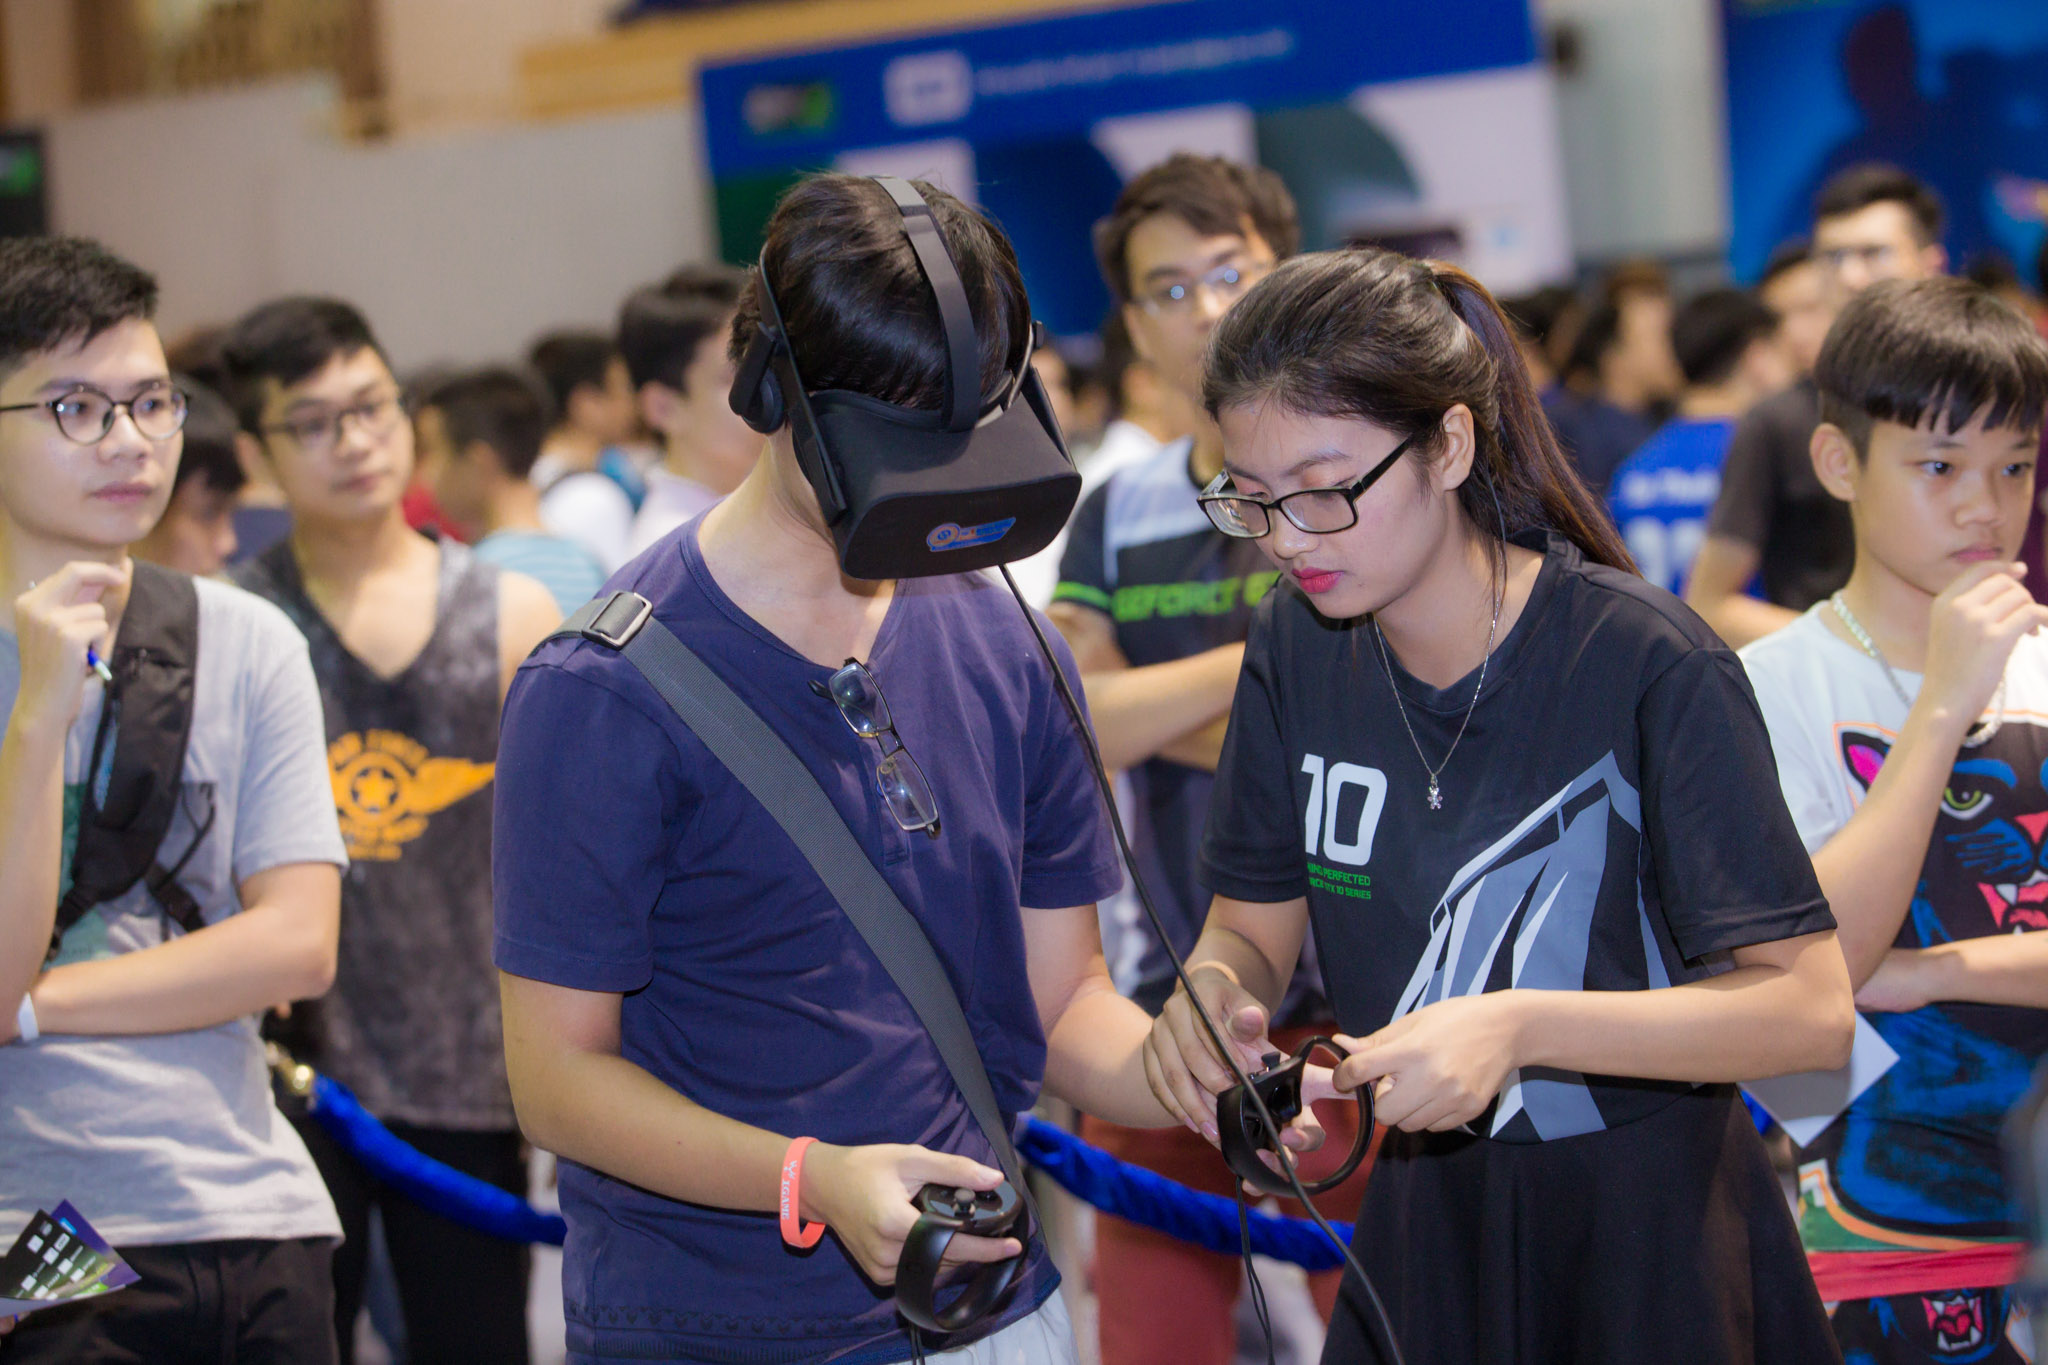 "Cơn lốc" Geforce Day 2017 đã đến Hà Nội, trải nghiệm đỉnh cao công nghệ Geforce 10-Series